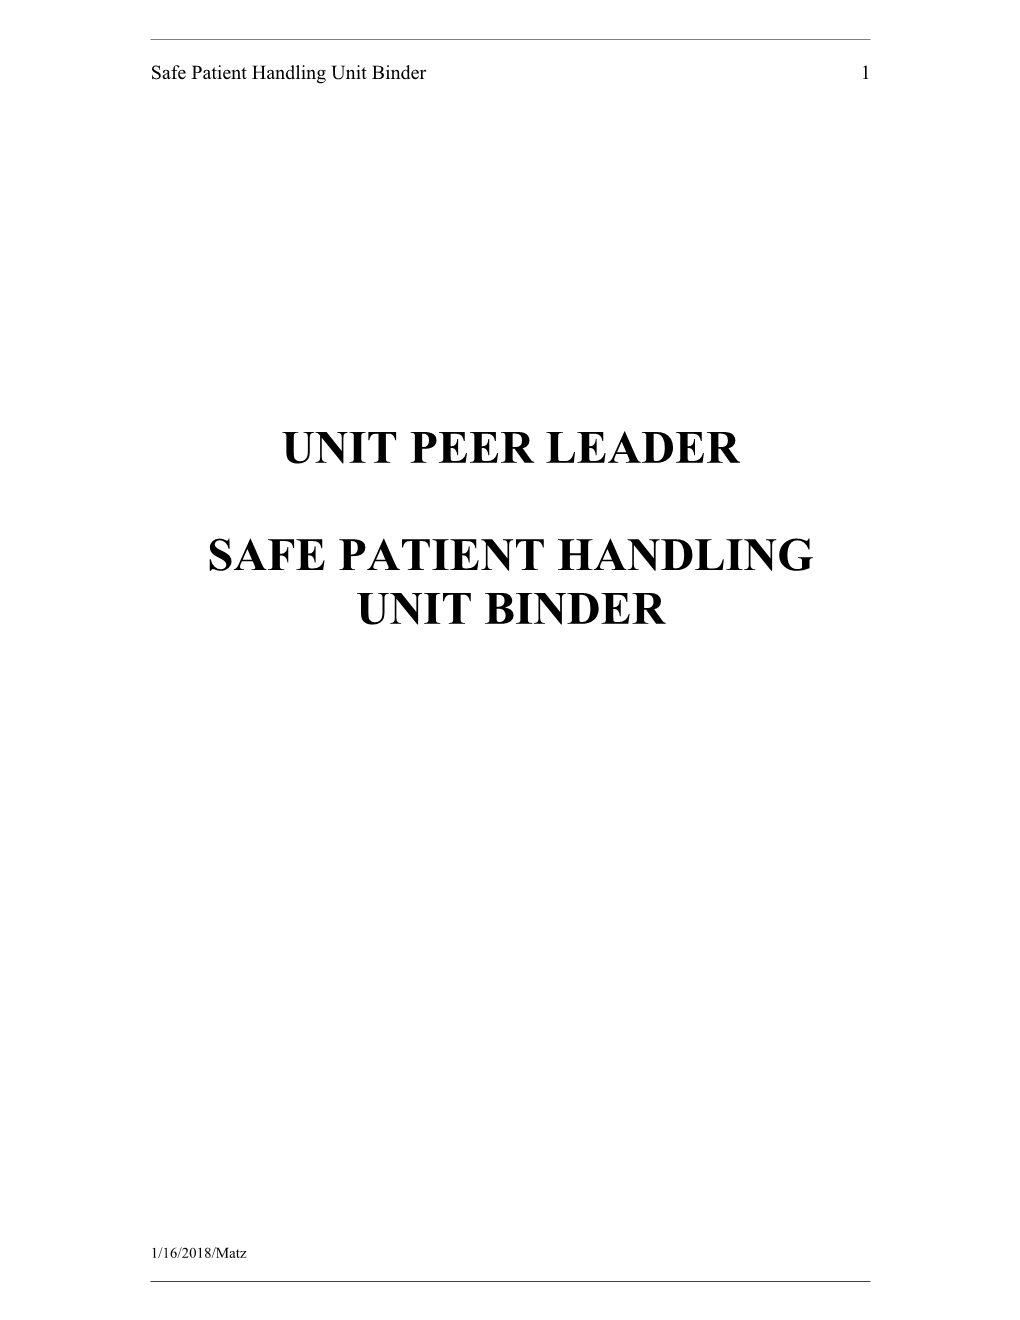 Unit Peer Leader Binder